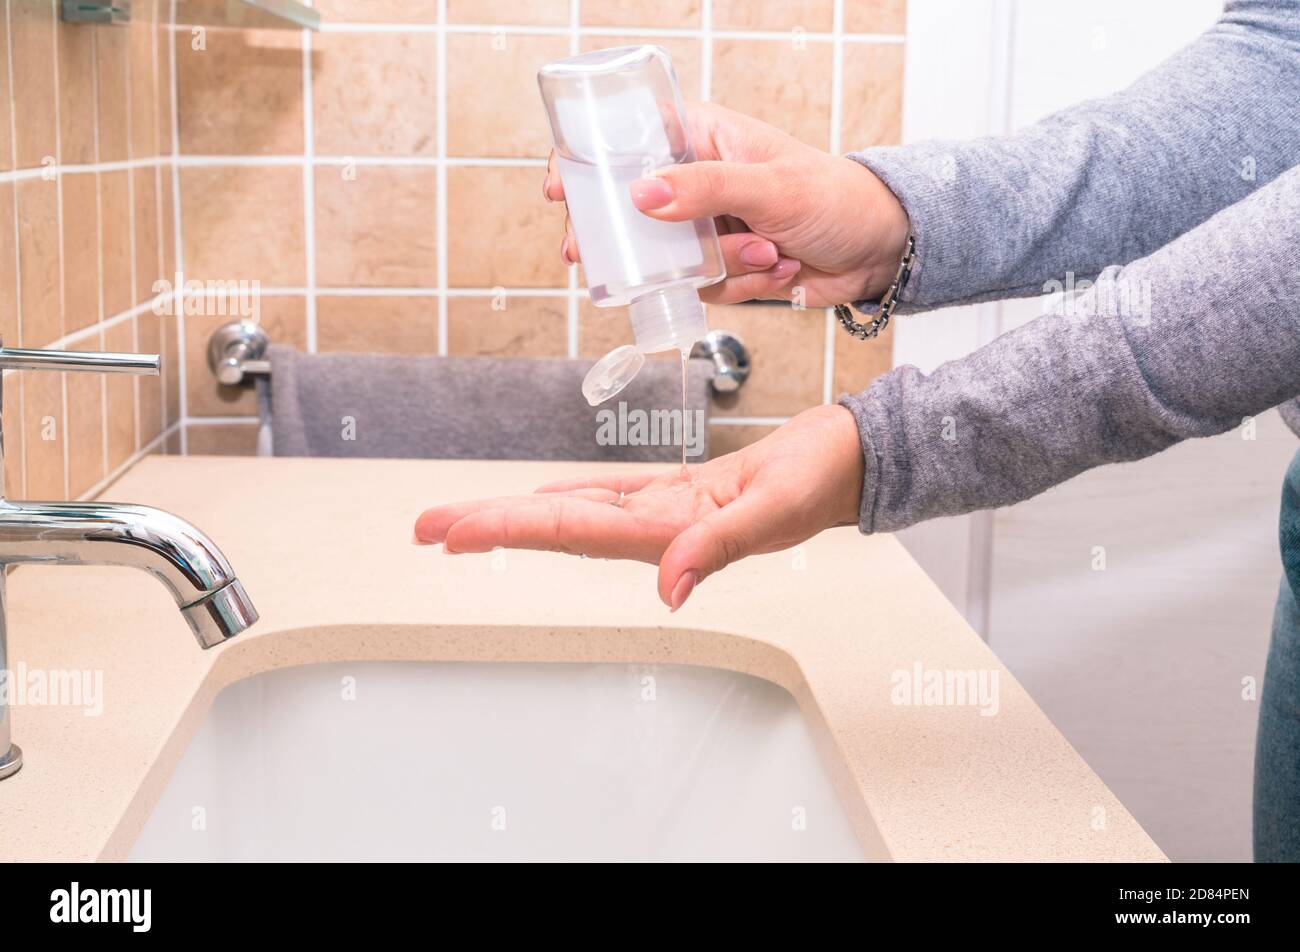 Covid-19 - femme nettoyant ses mains dans la salle de bains avec antibactérien Gel désinfectant - Nouveau concept normal de désinfection des mains Banque D'Images